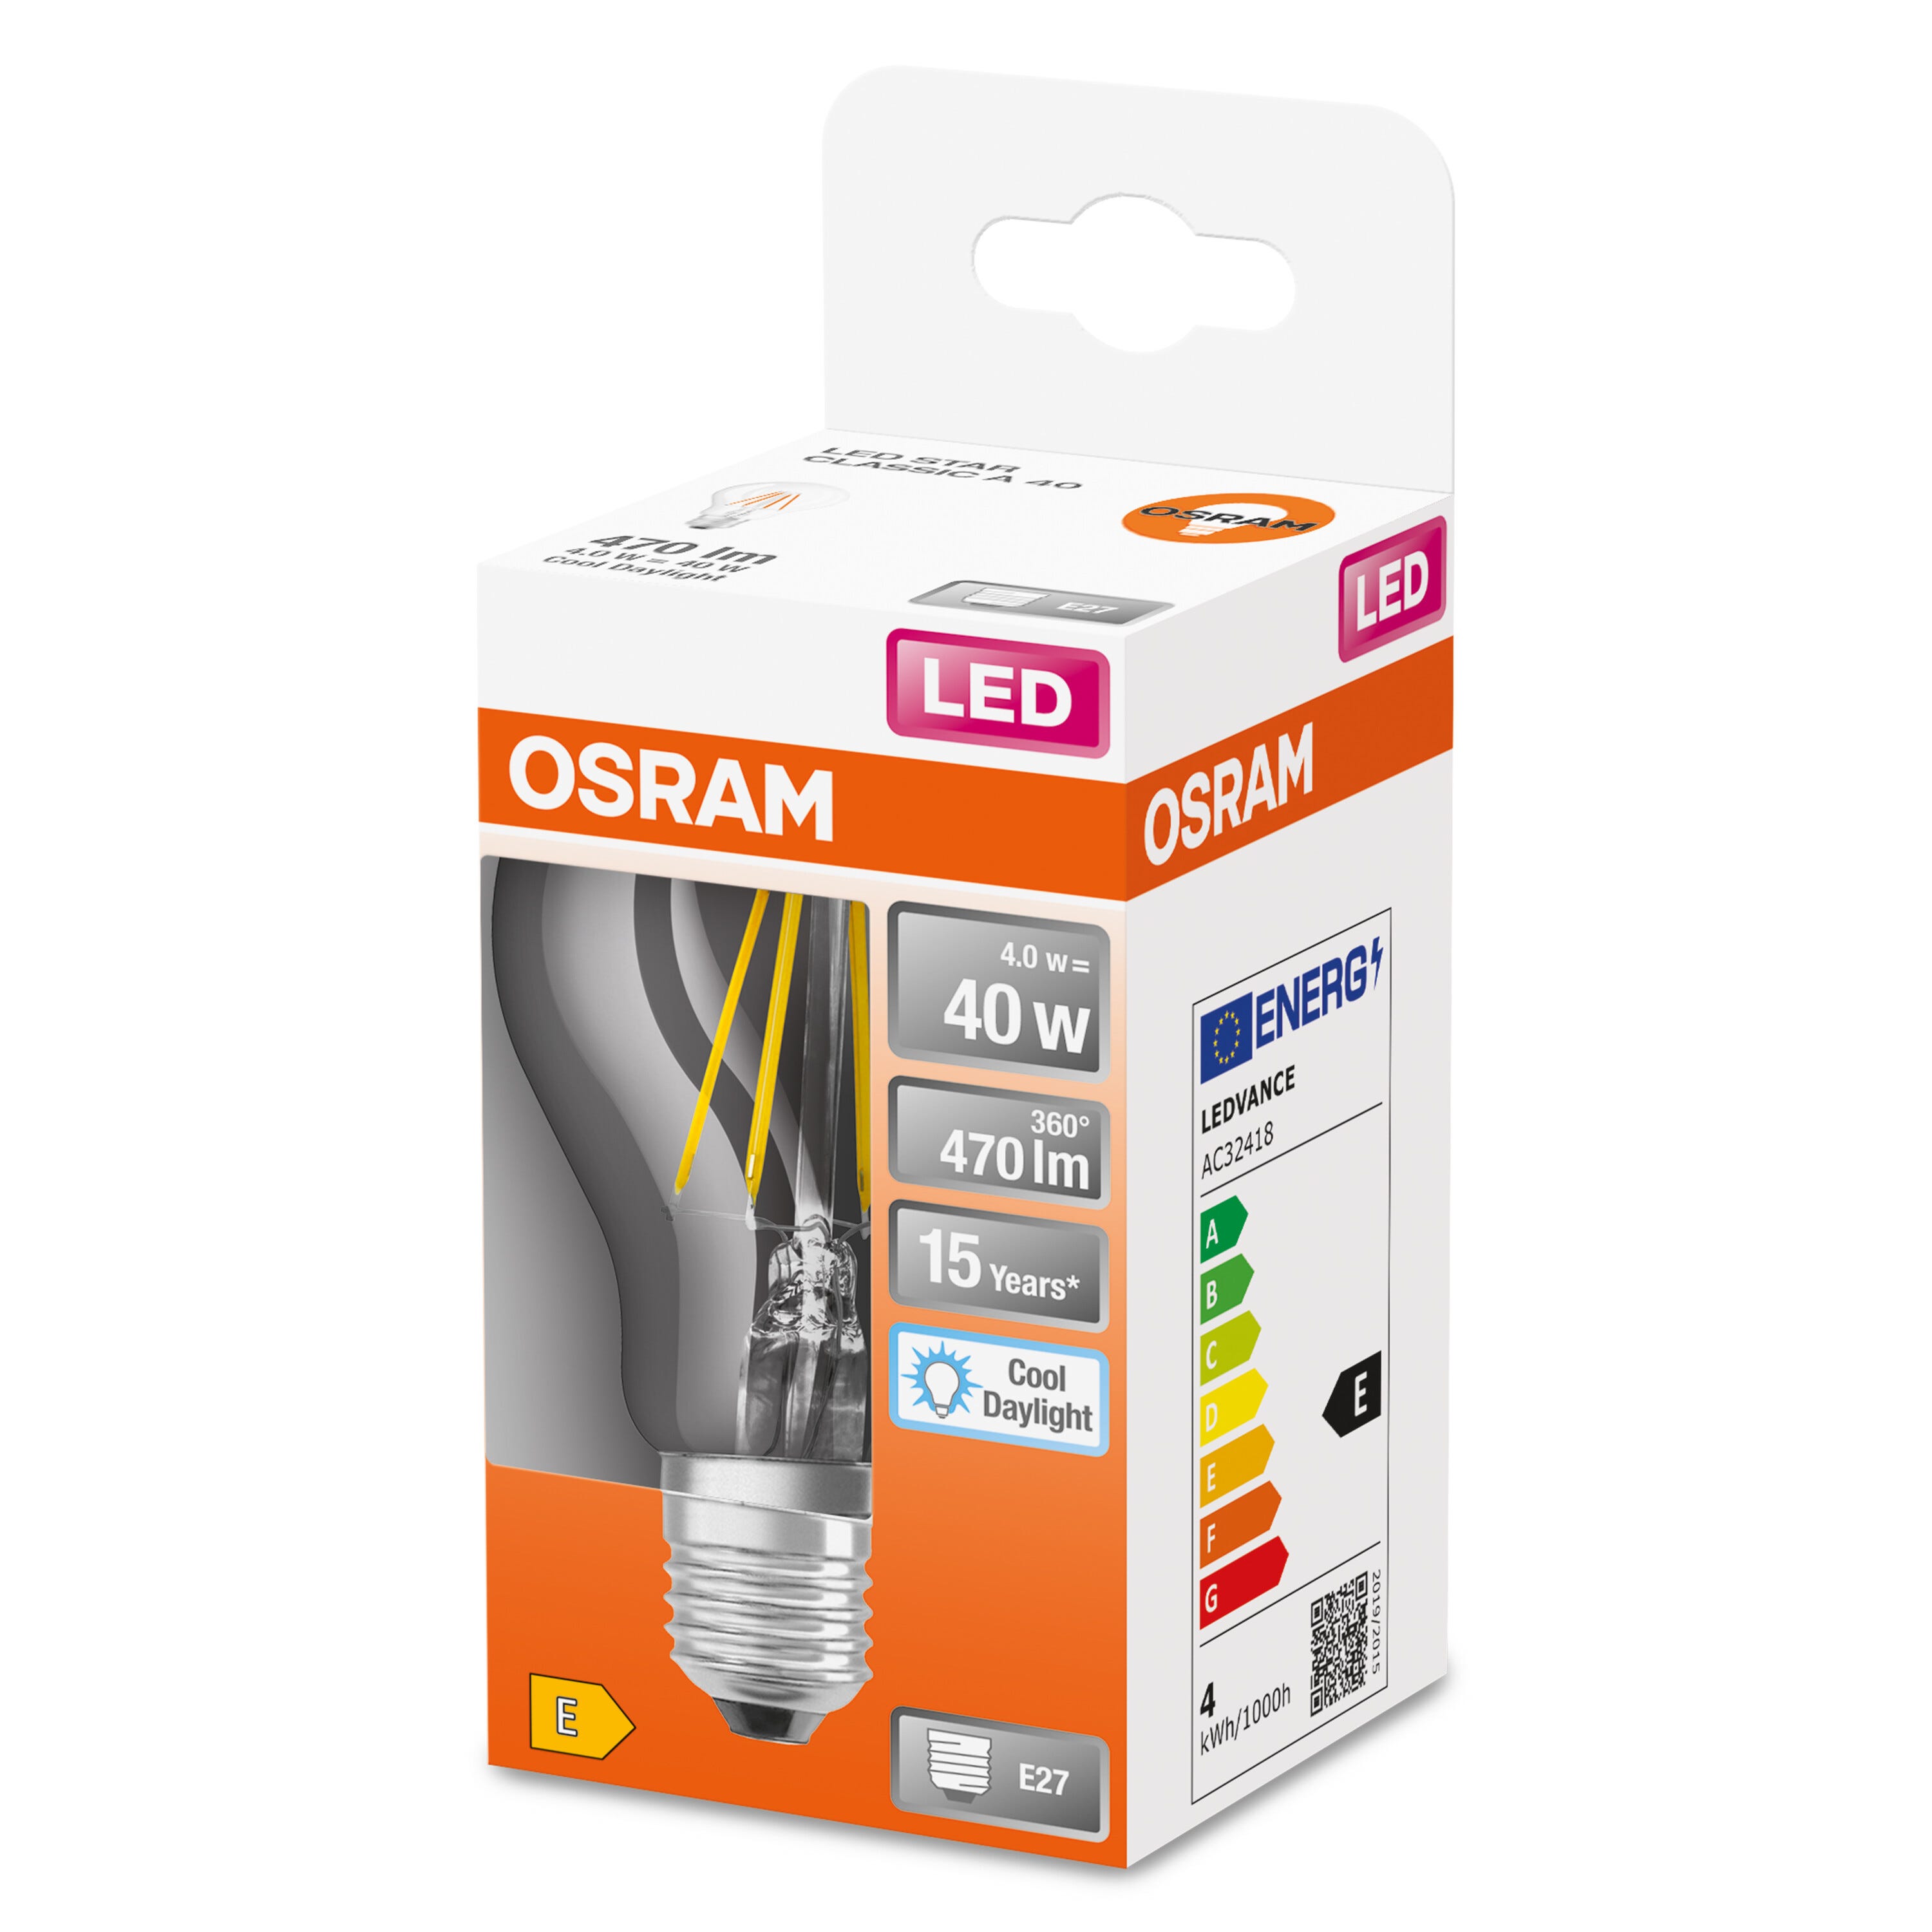 Ampoule LED E14 6,5W Bougie équivalent à 60W - Blanc du Jour 6500K